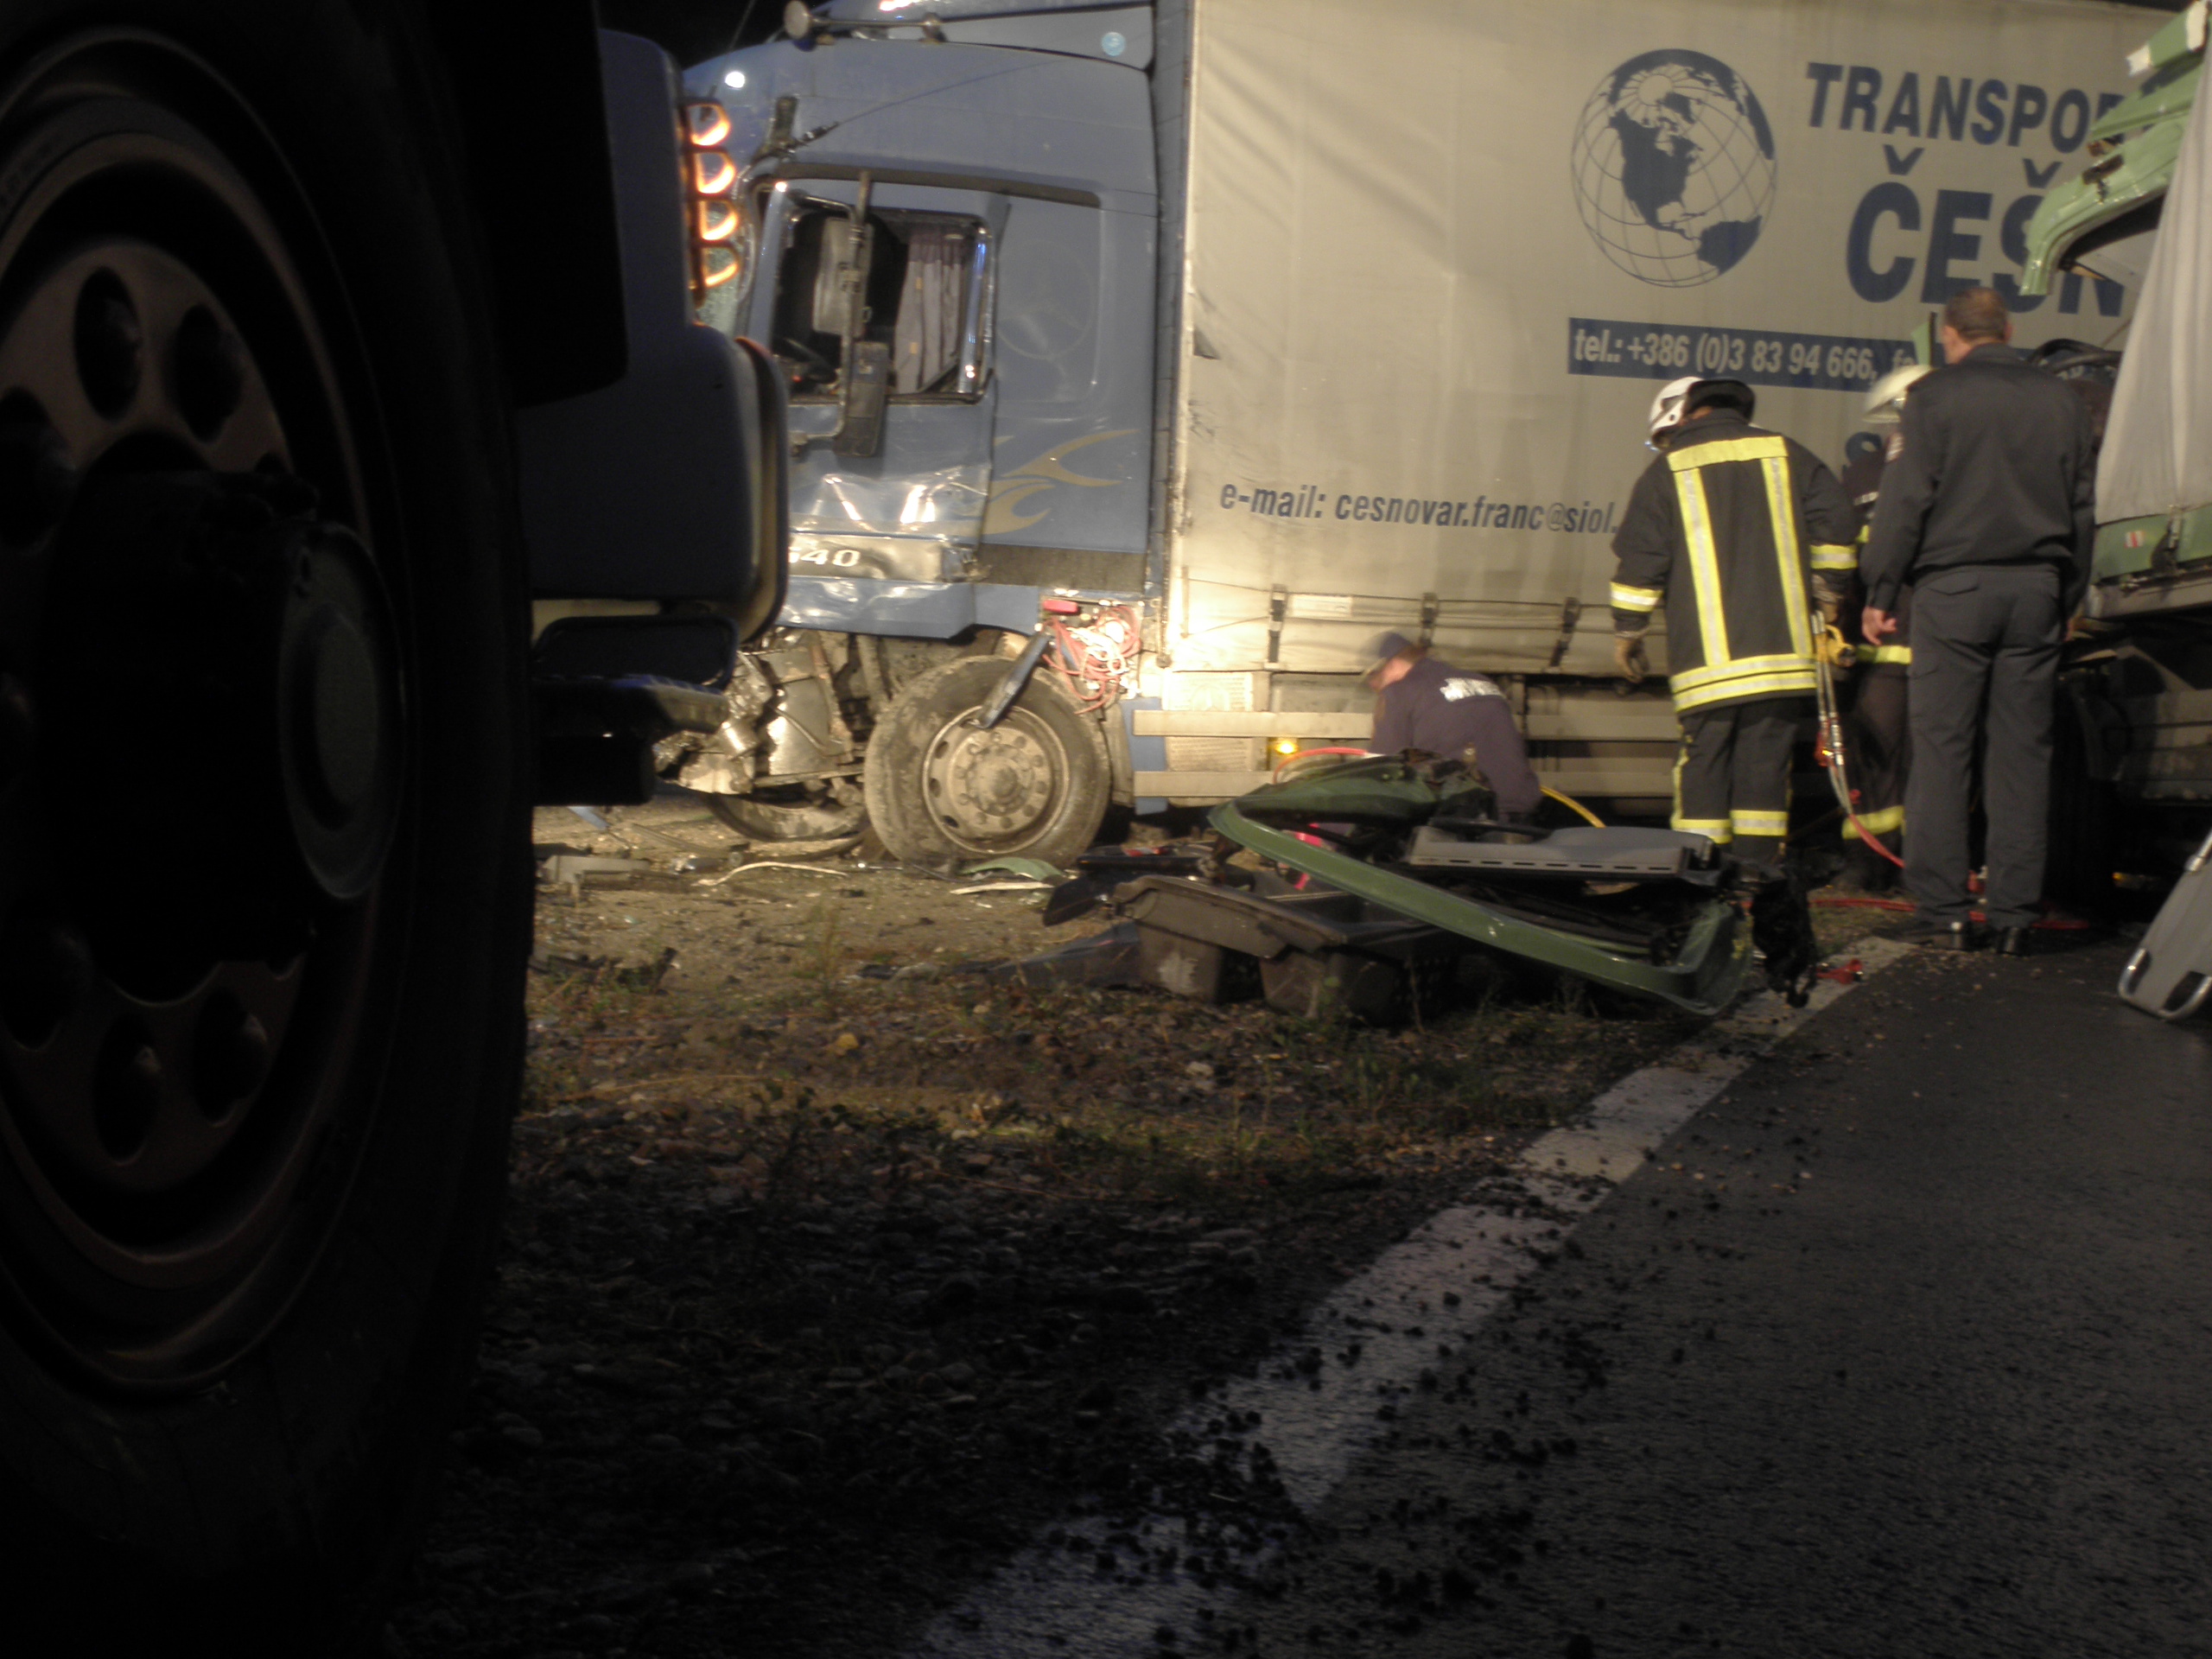 След катастрофата пожарникари 45 минути рязаха кабината на единия товарен камион, за да извадят водача, който бе затиснат